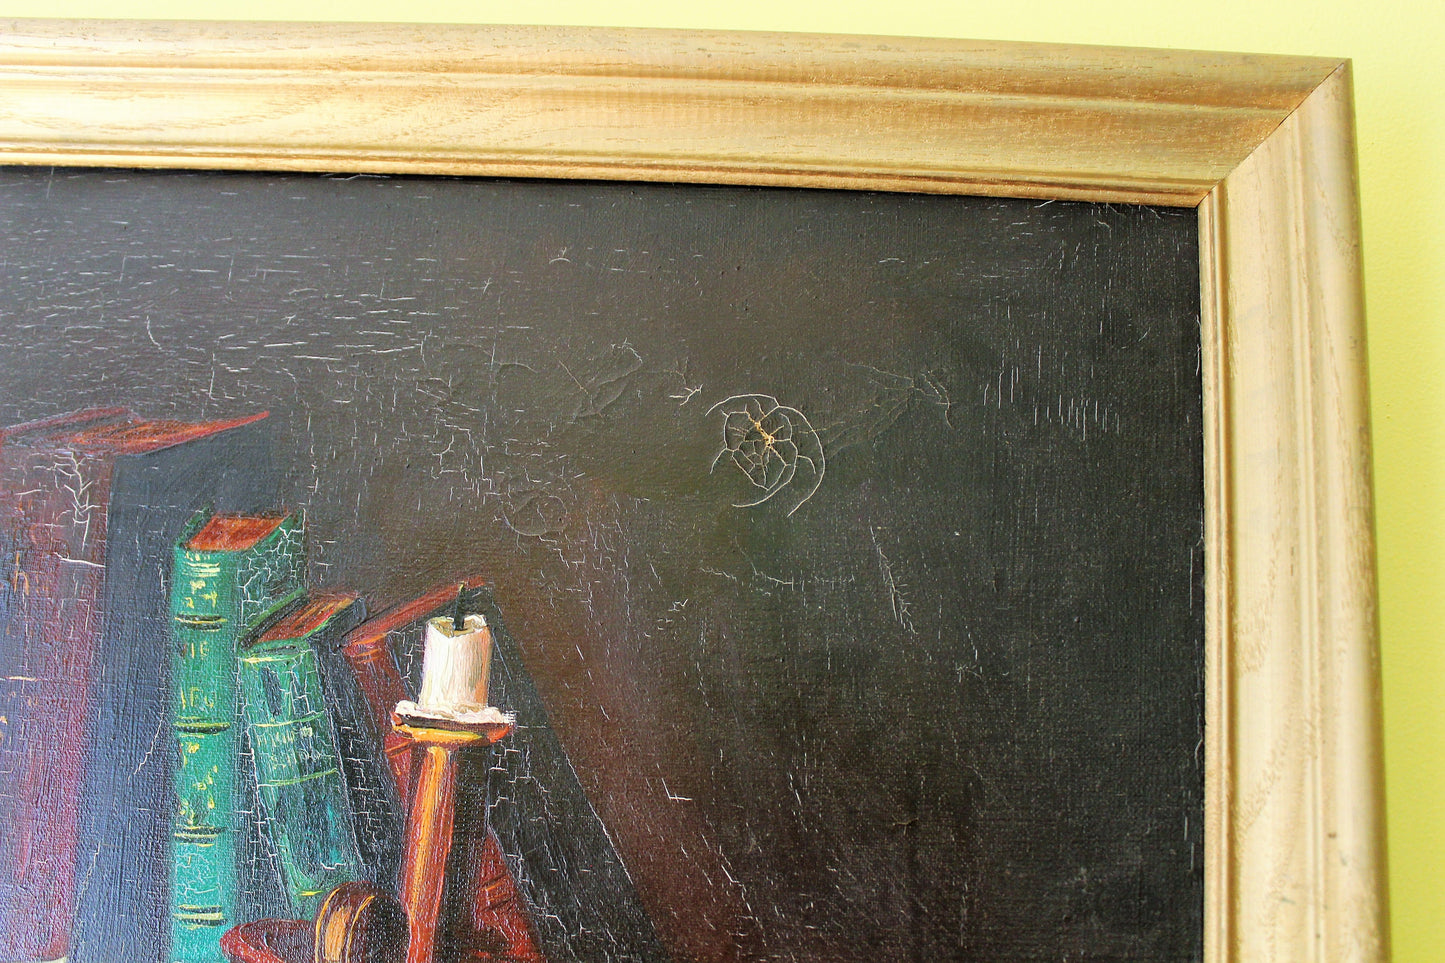 Antique Original Oil Painting on canvas  Signed Azuquita